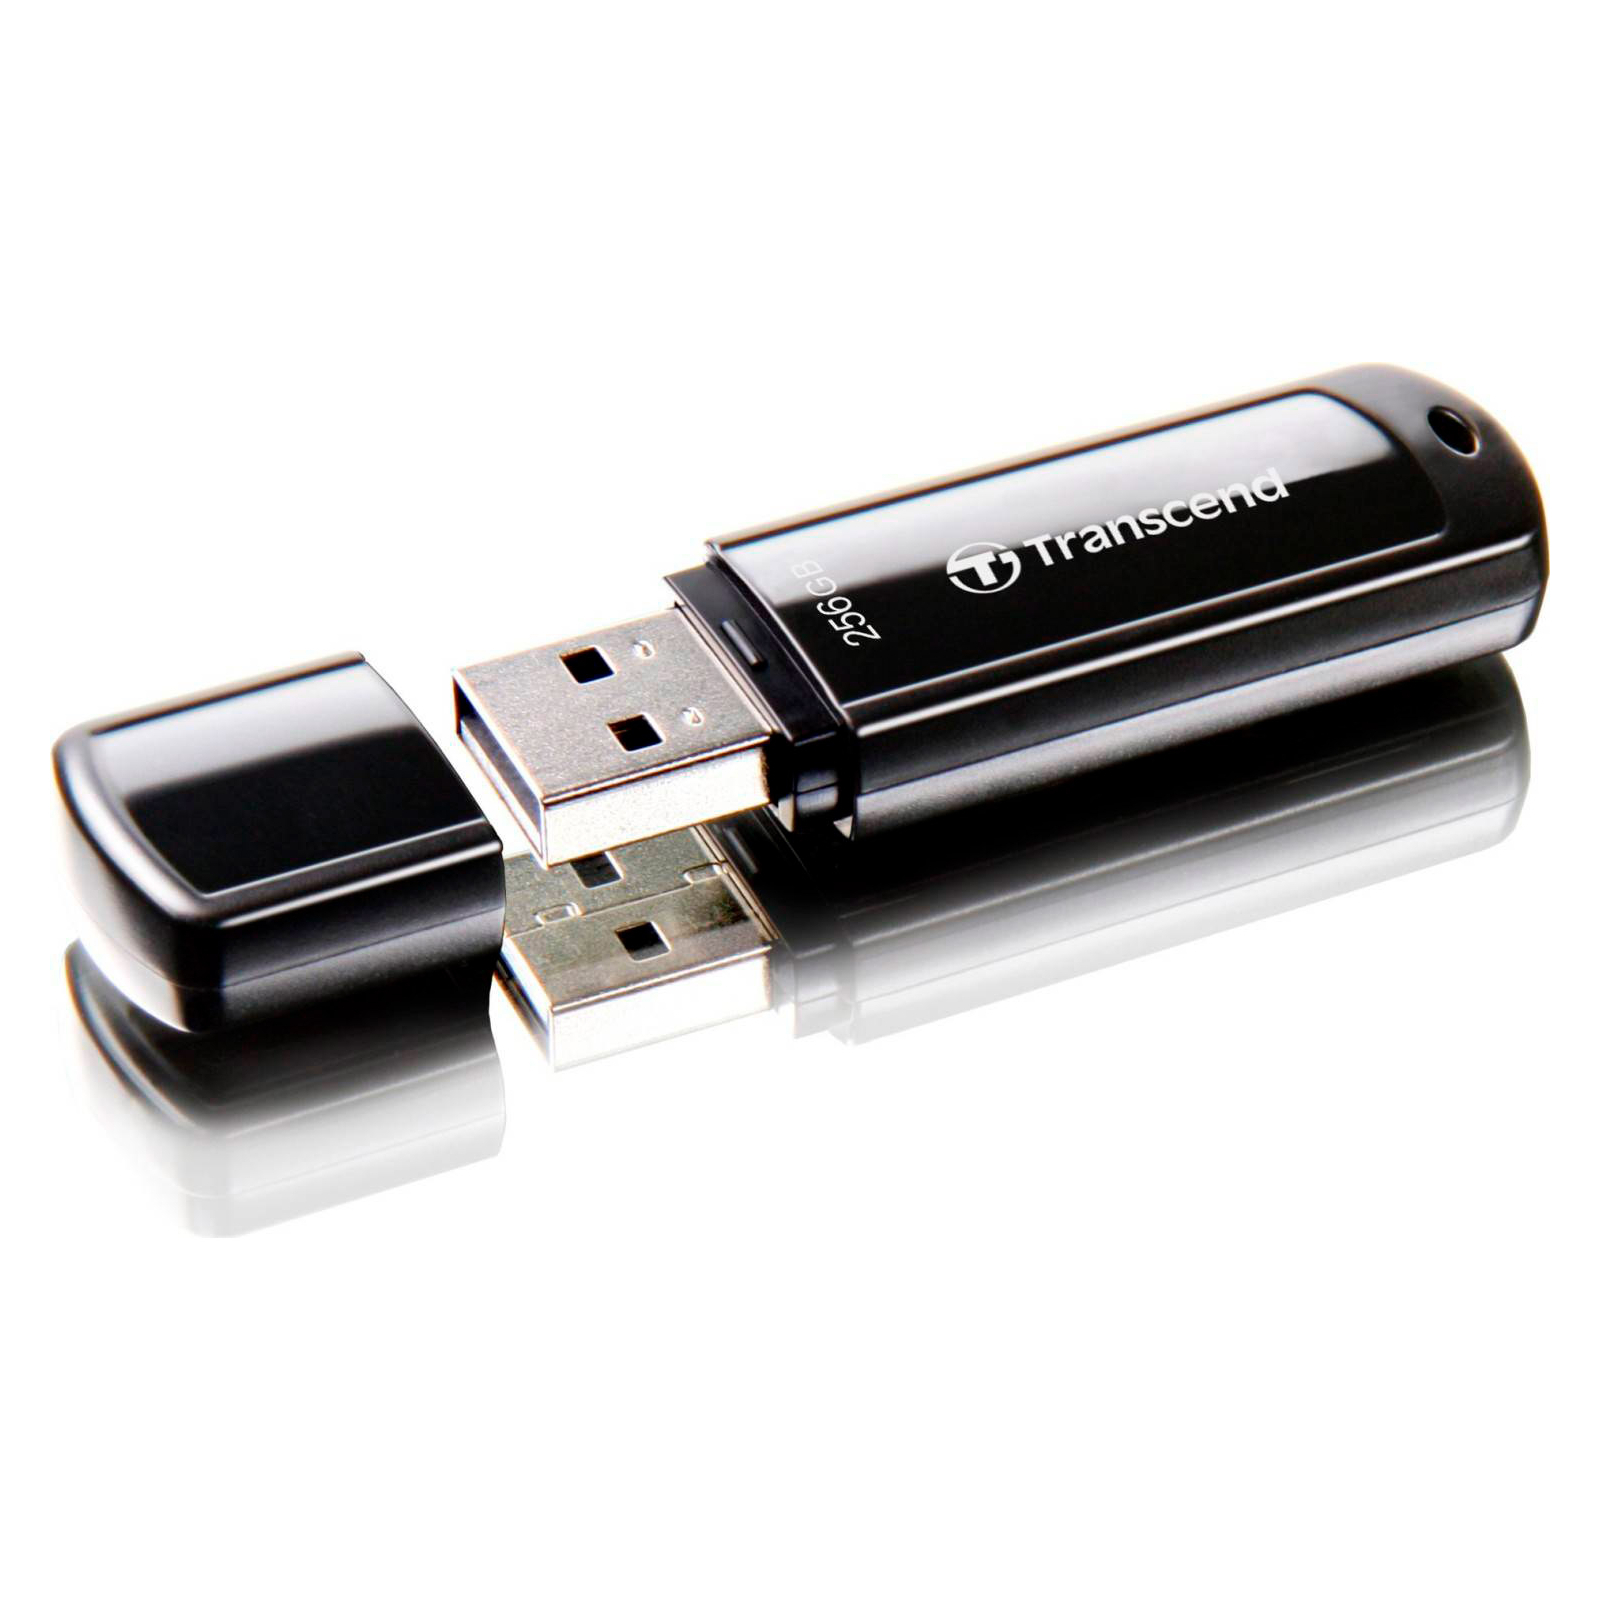 USB флеш накопитель Transcend 256GB JetFlash 700 Black USB 3.1 (TS256GJF700) изображение 2